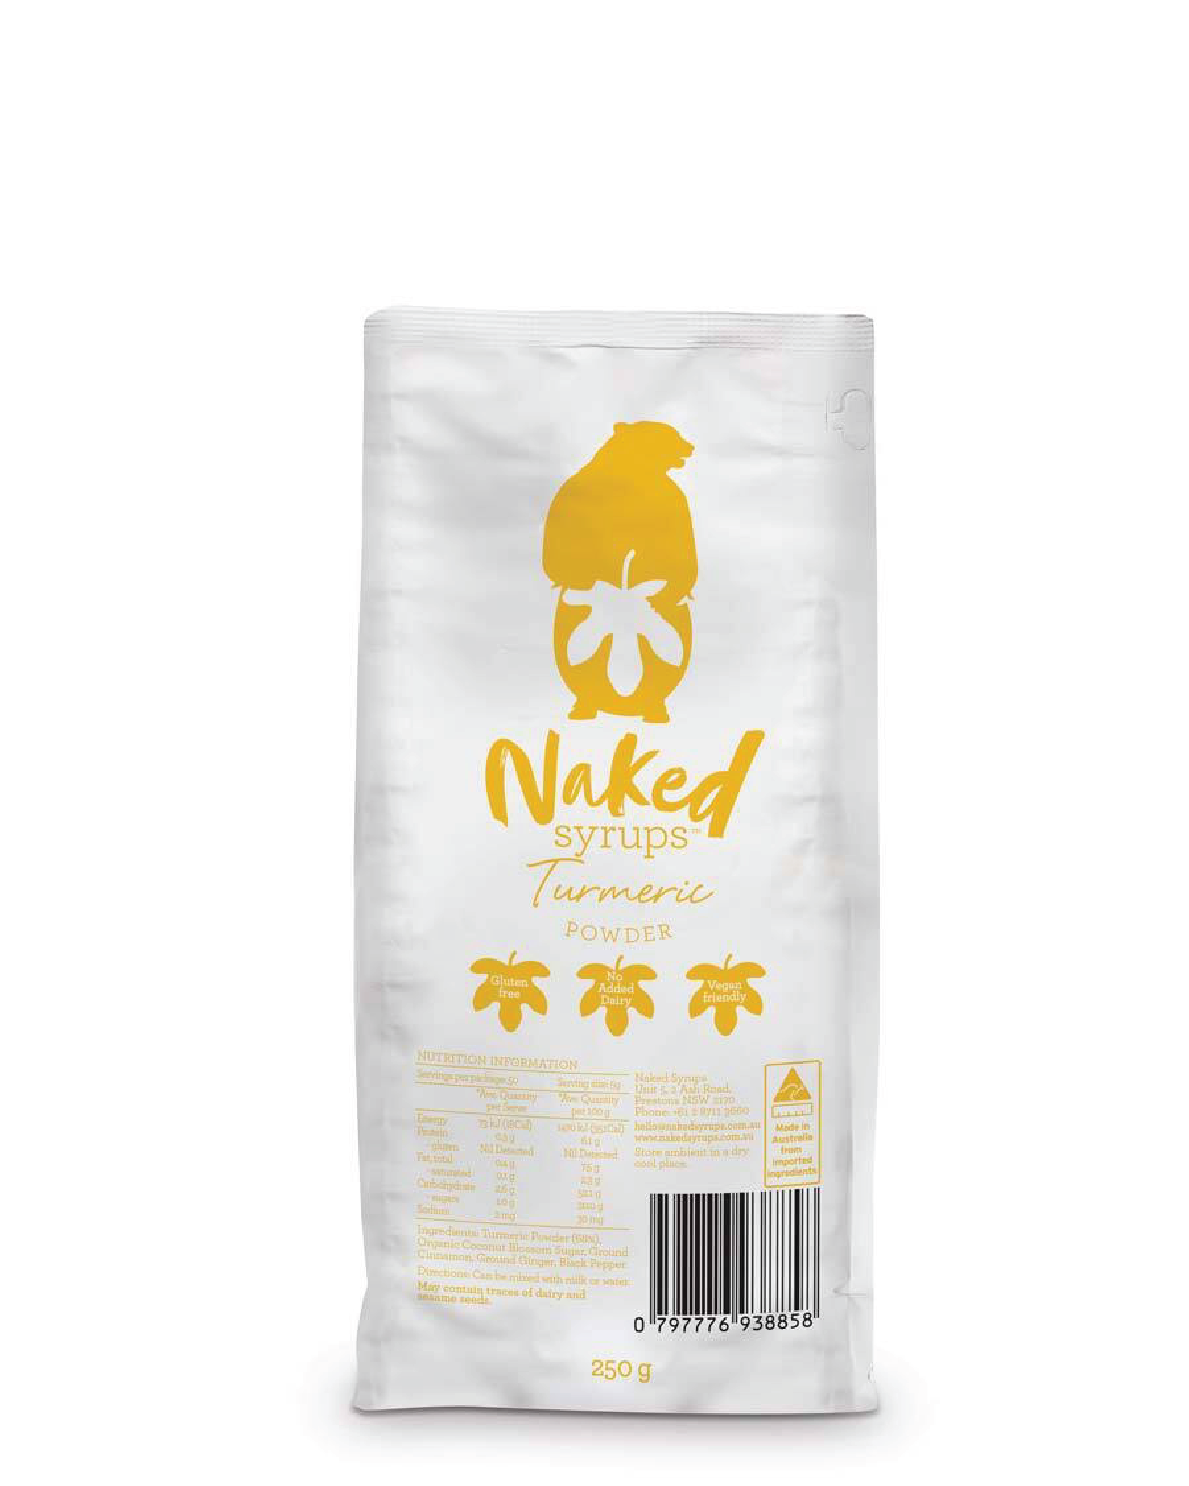 Naked Syrups Turmeric Powder (250g)